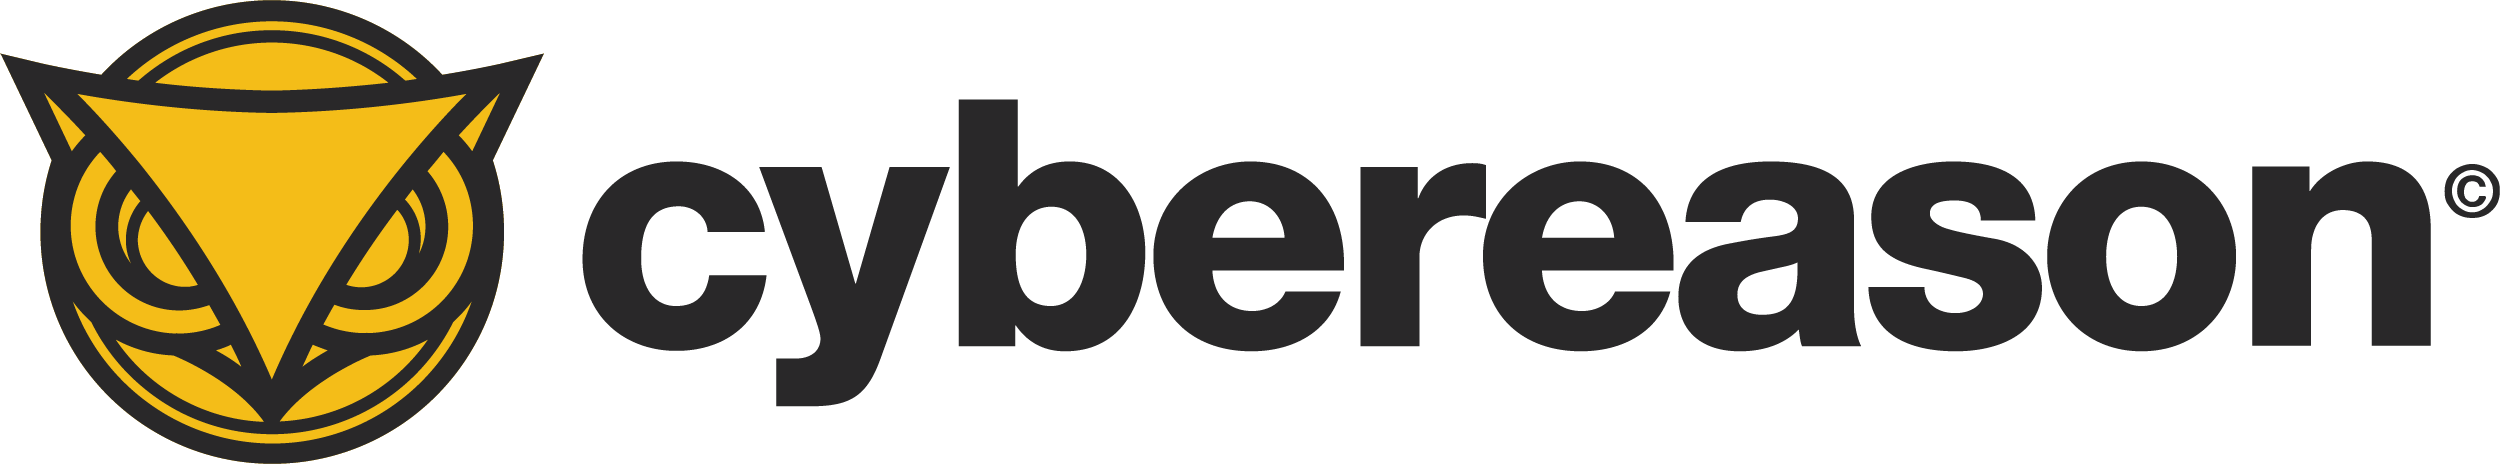 Cybereason-logo-vector-2022